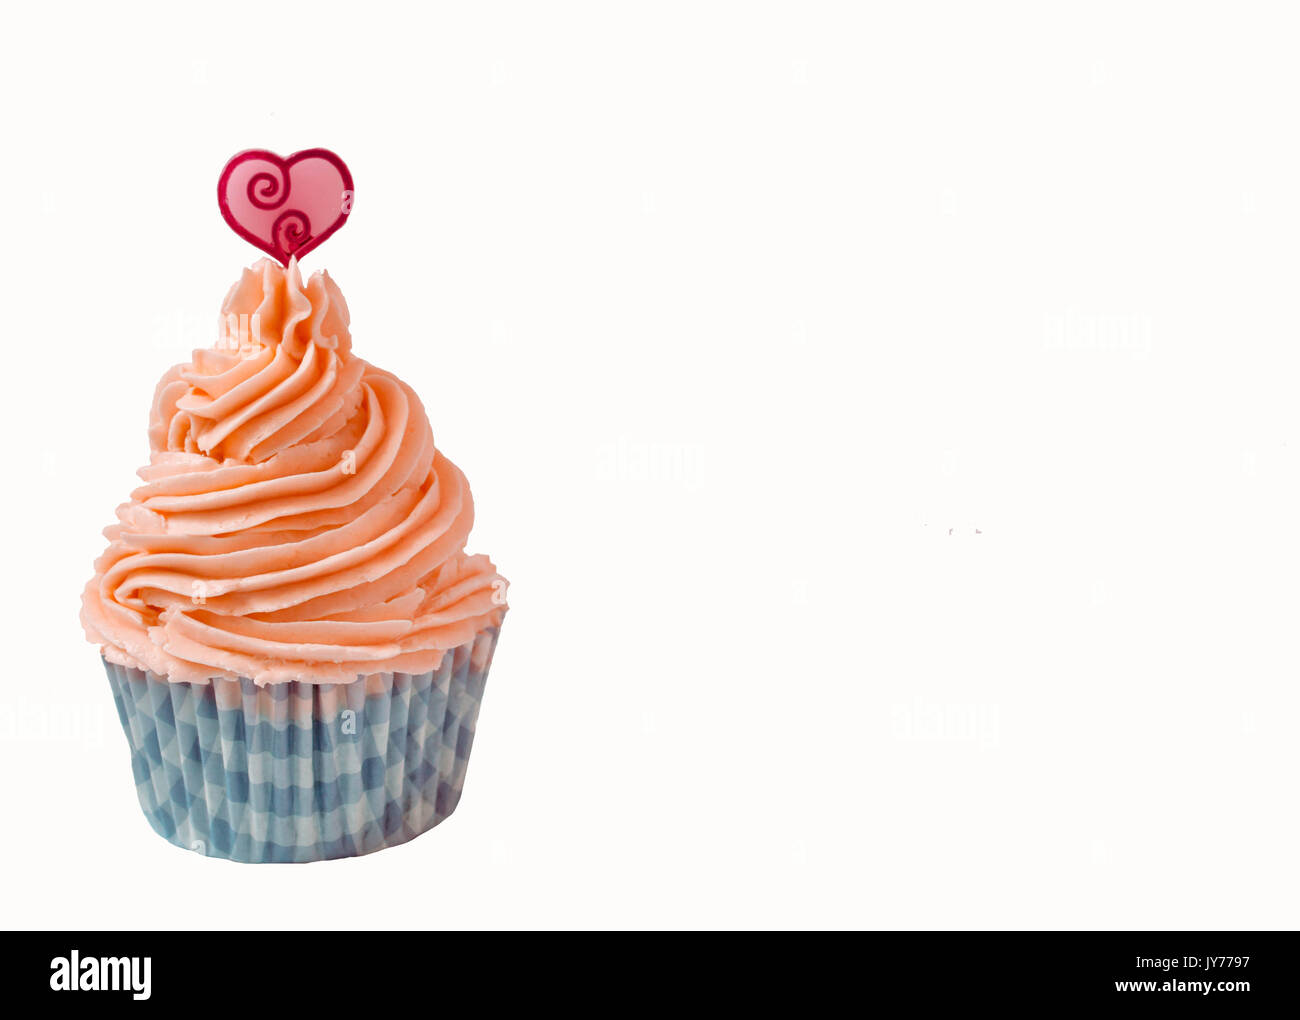 Strawberry buttercream cupcake avec un coeur sur fond blanc en haut Banque D'Images